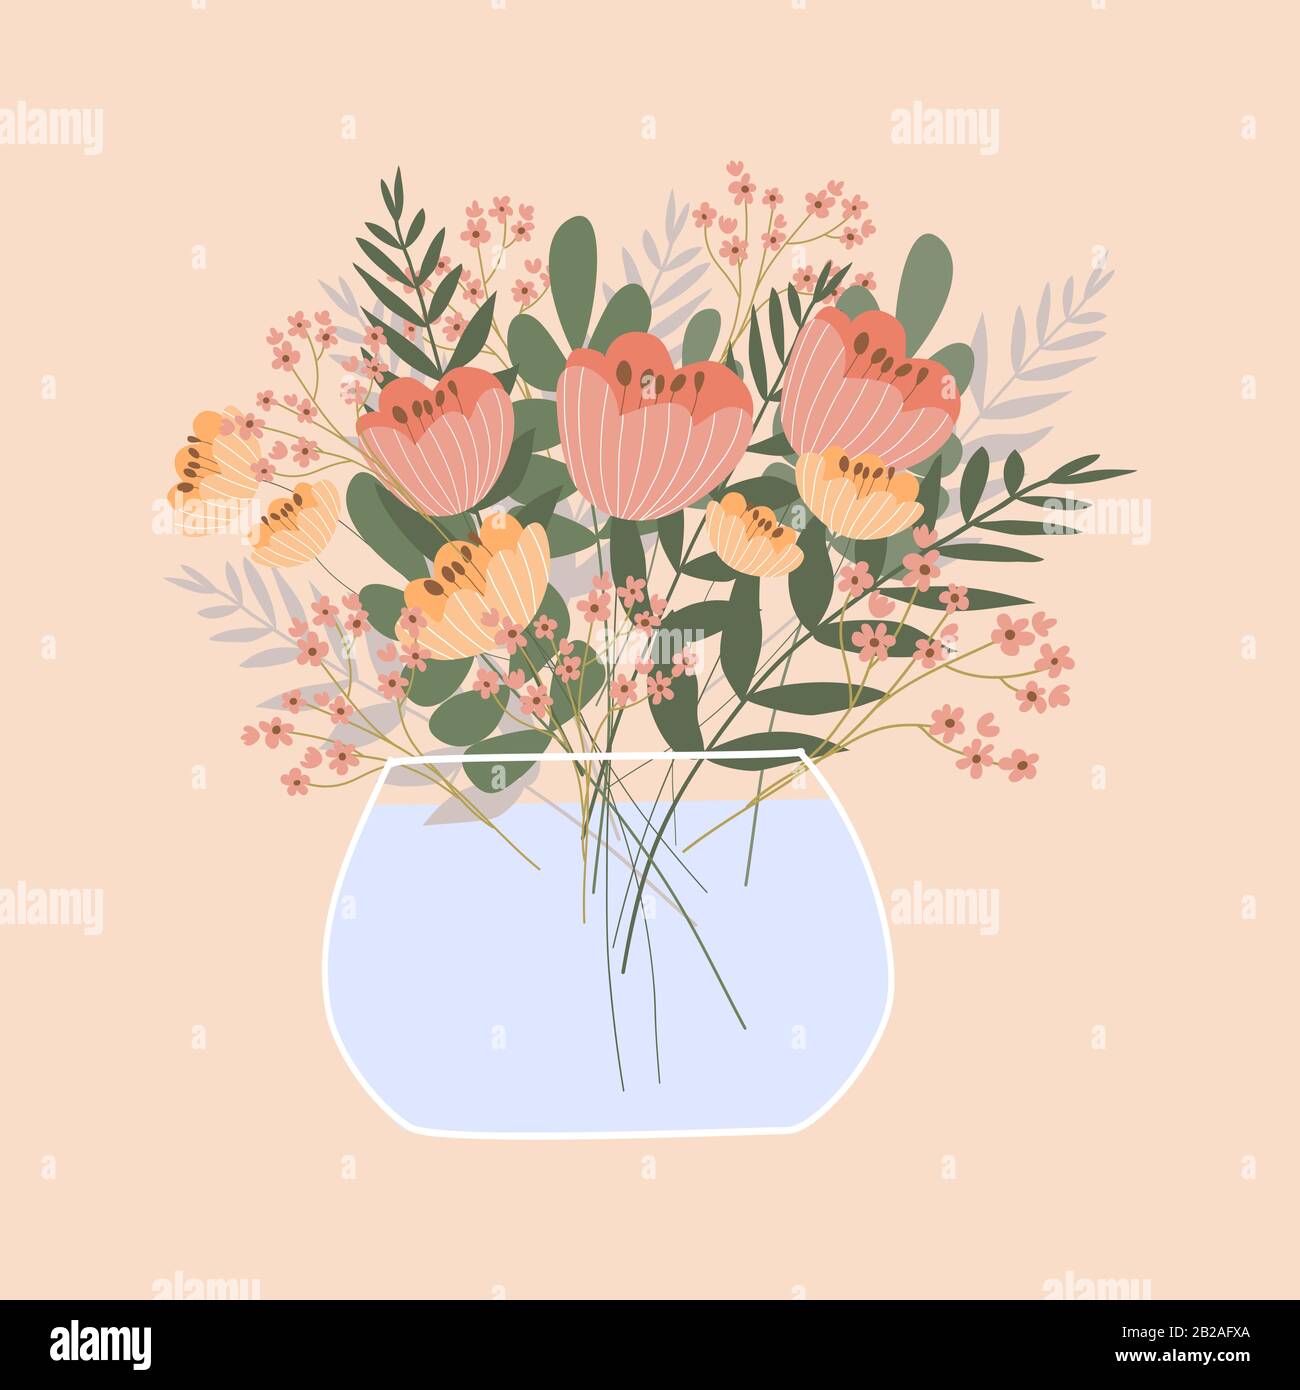 Süßer romantischer Blumenstrauß in der Vase auf pinkfarbenem Hintergrund. Vektorgrafiken. Stock Vektor